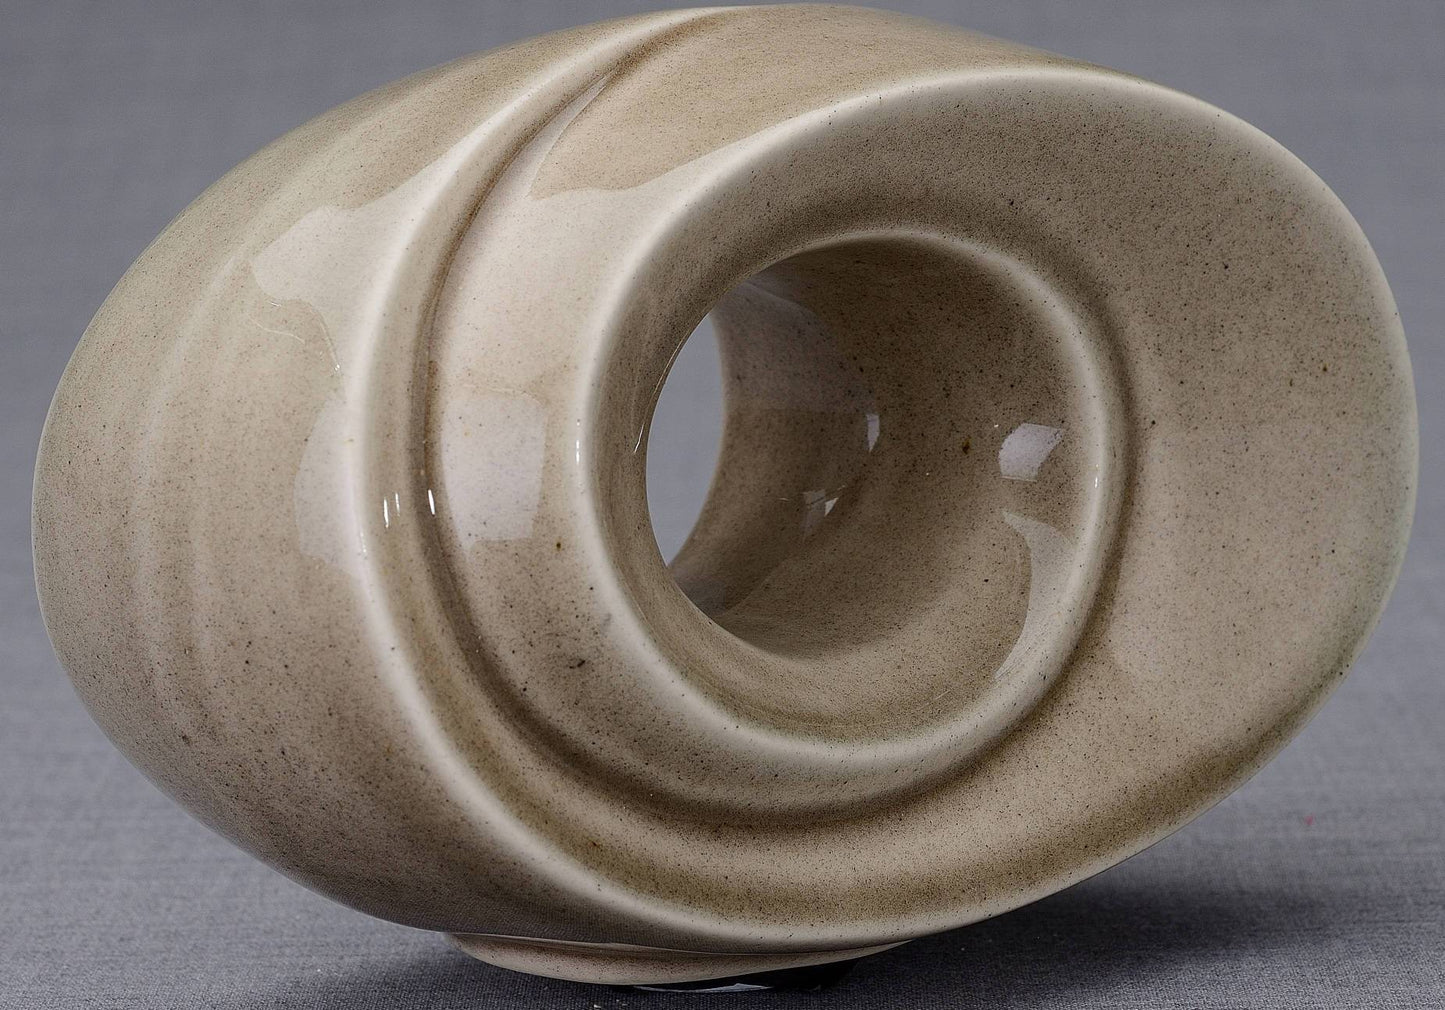 
                  
                    The Passage Handmade Cremation Keepsake Urn for Ashes, color Beige Grey-PulvisArtUrns-Pulvis Art Urns
                  
                